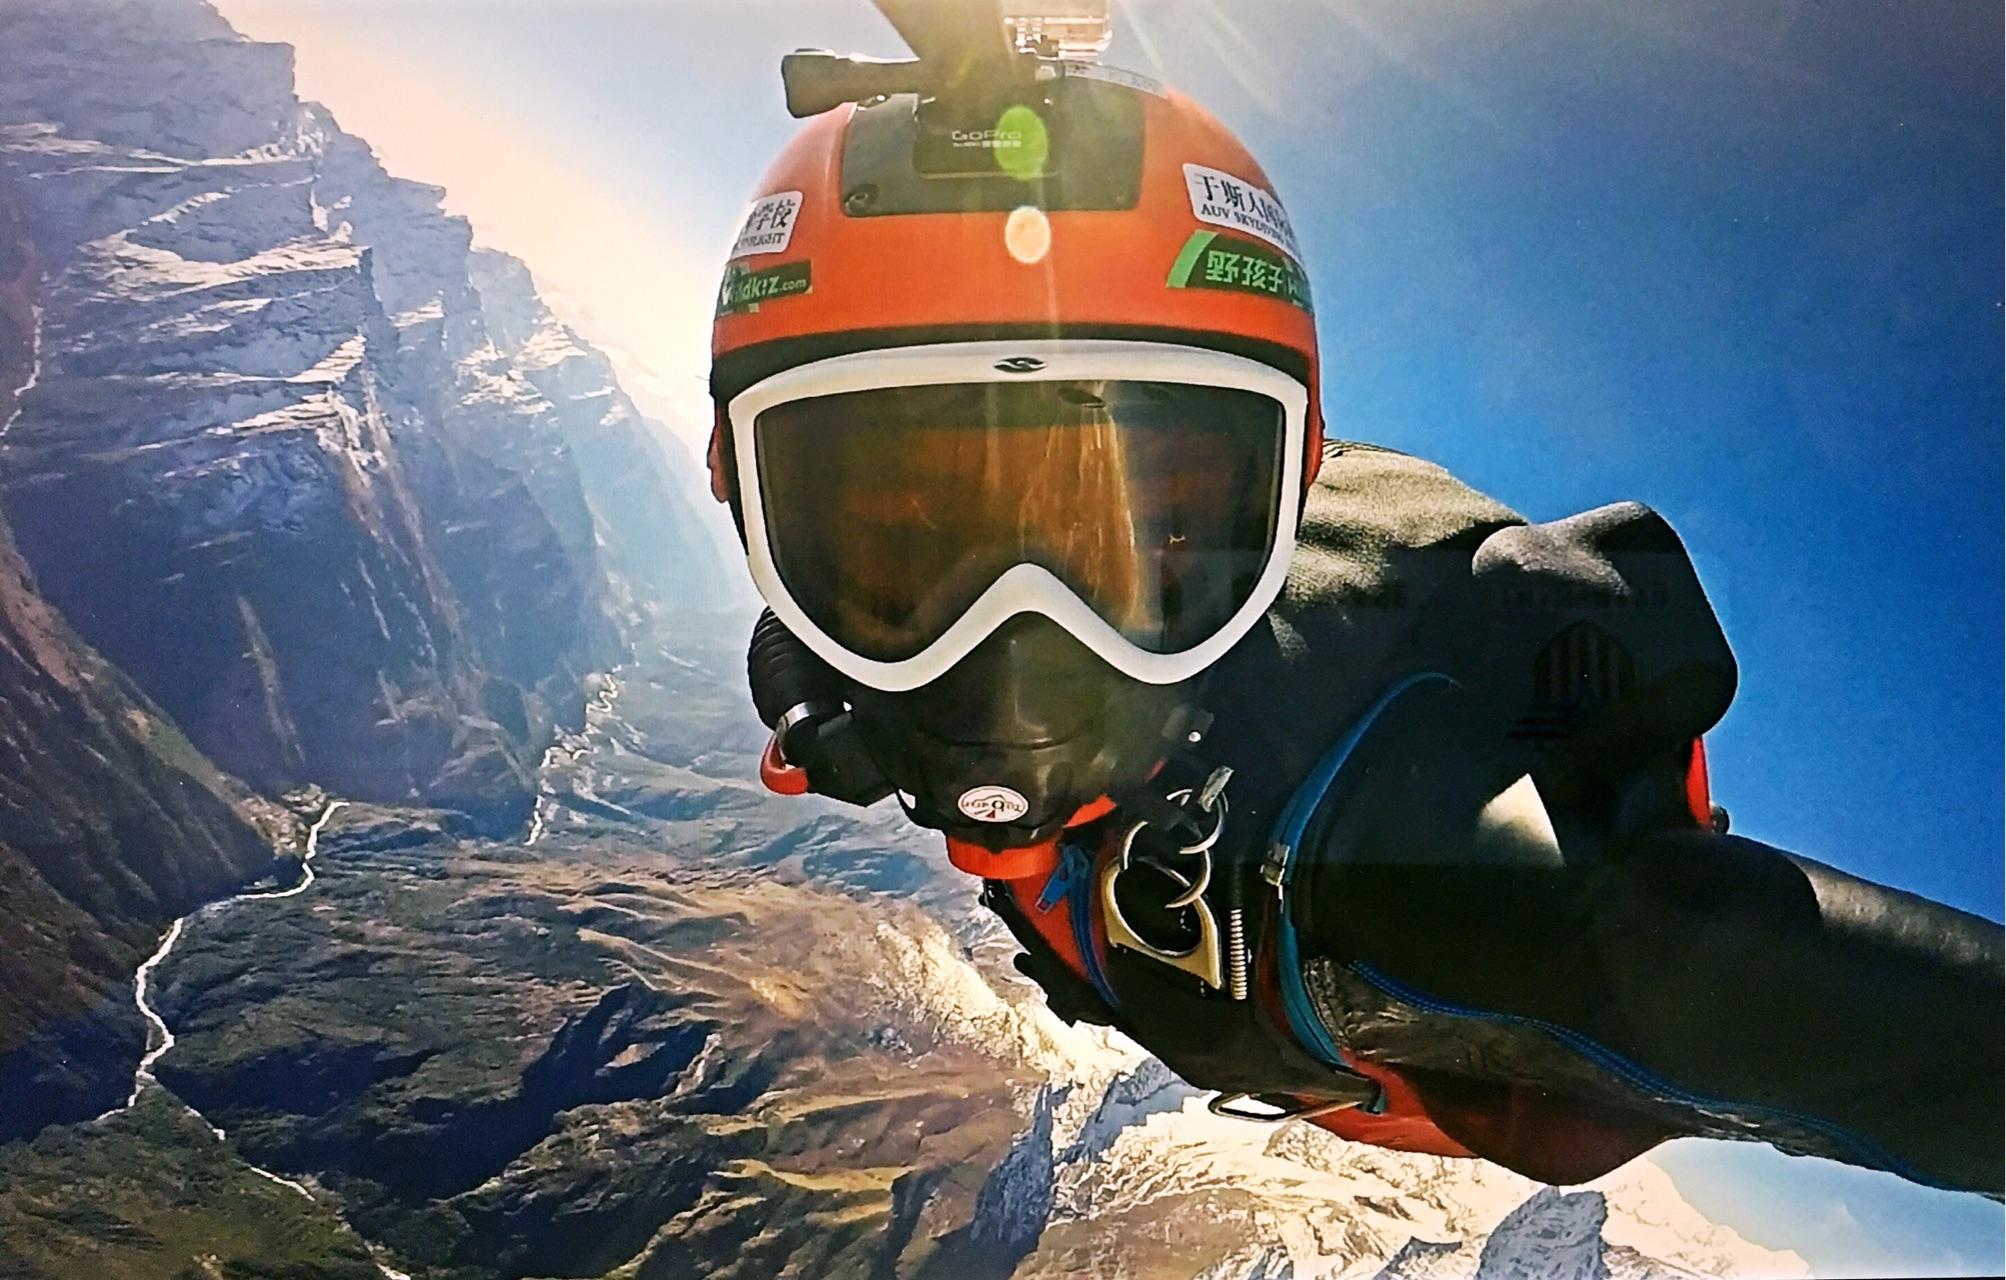 飞机跳跳伞运动员 库存照片. 图片 包括有 乐趣, 飞行, 体育运动, 自由, 速度, 工作, 形成, 潜水 - 9502448